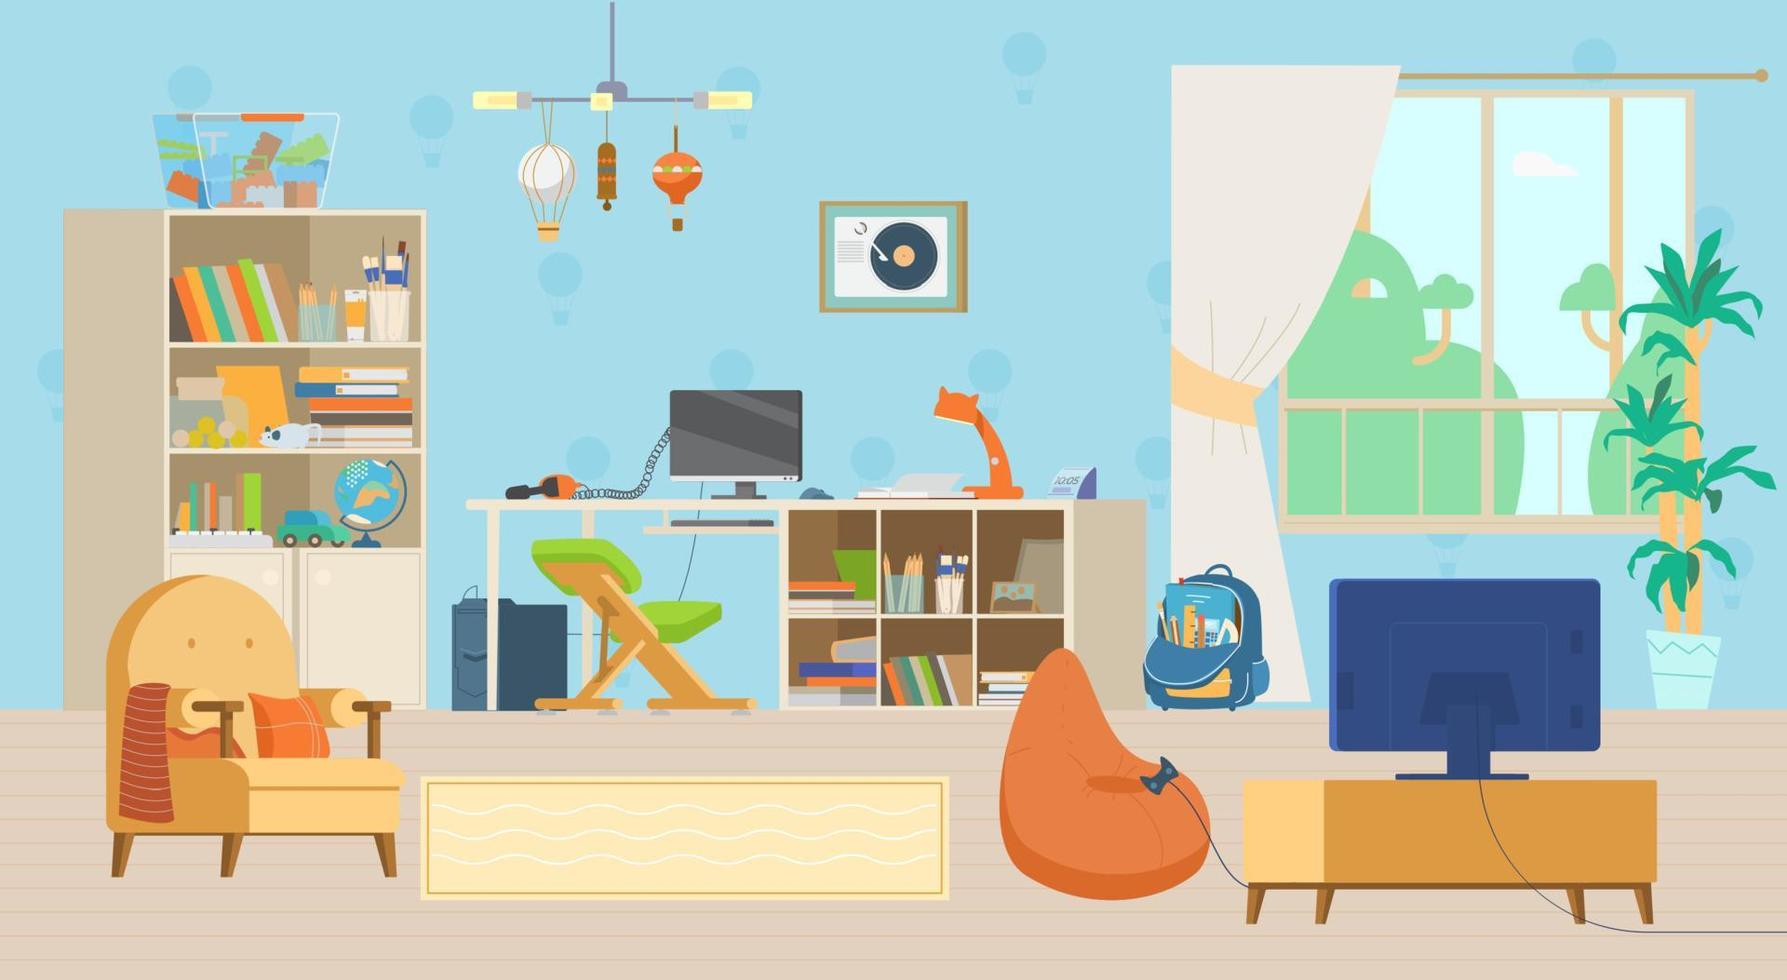 ilustração em vetor plana interior acolhedor quarto infantil. móveis de madeira, estante, local de trabalho com computador e cadeira ergonômica, tv, playstation, brinquedos e decorações.